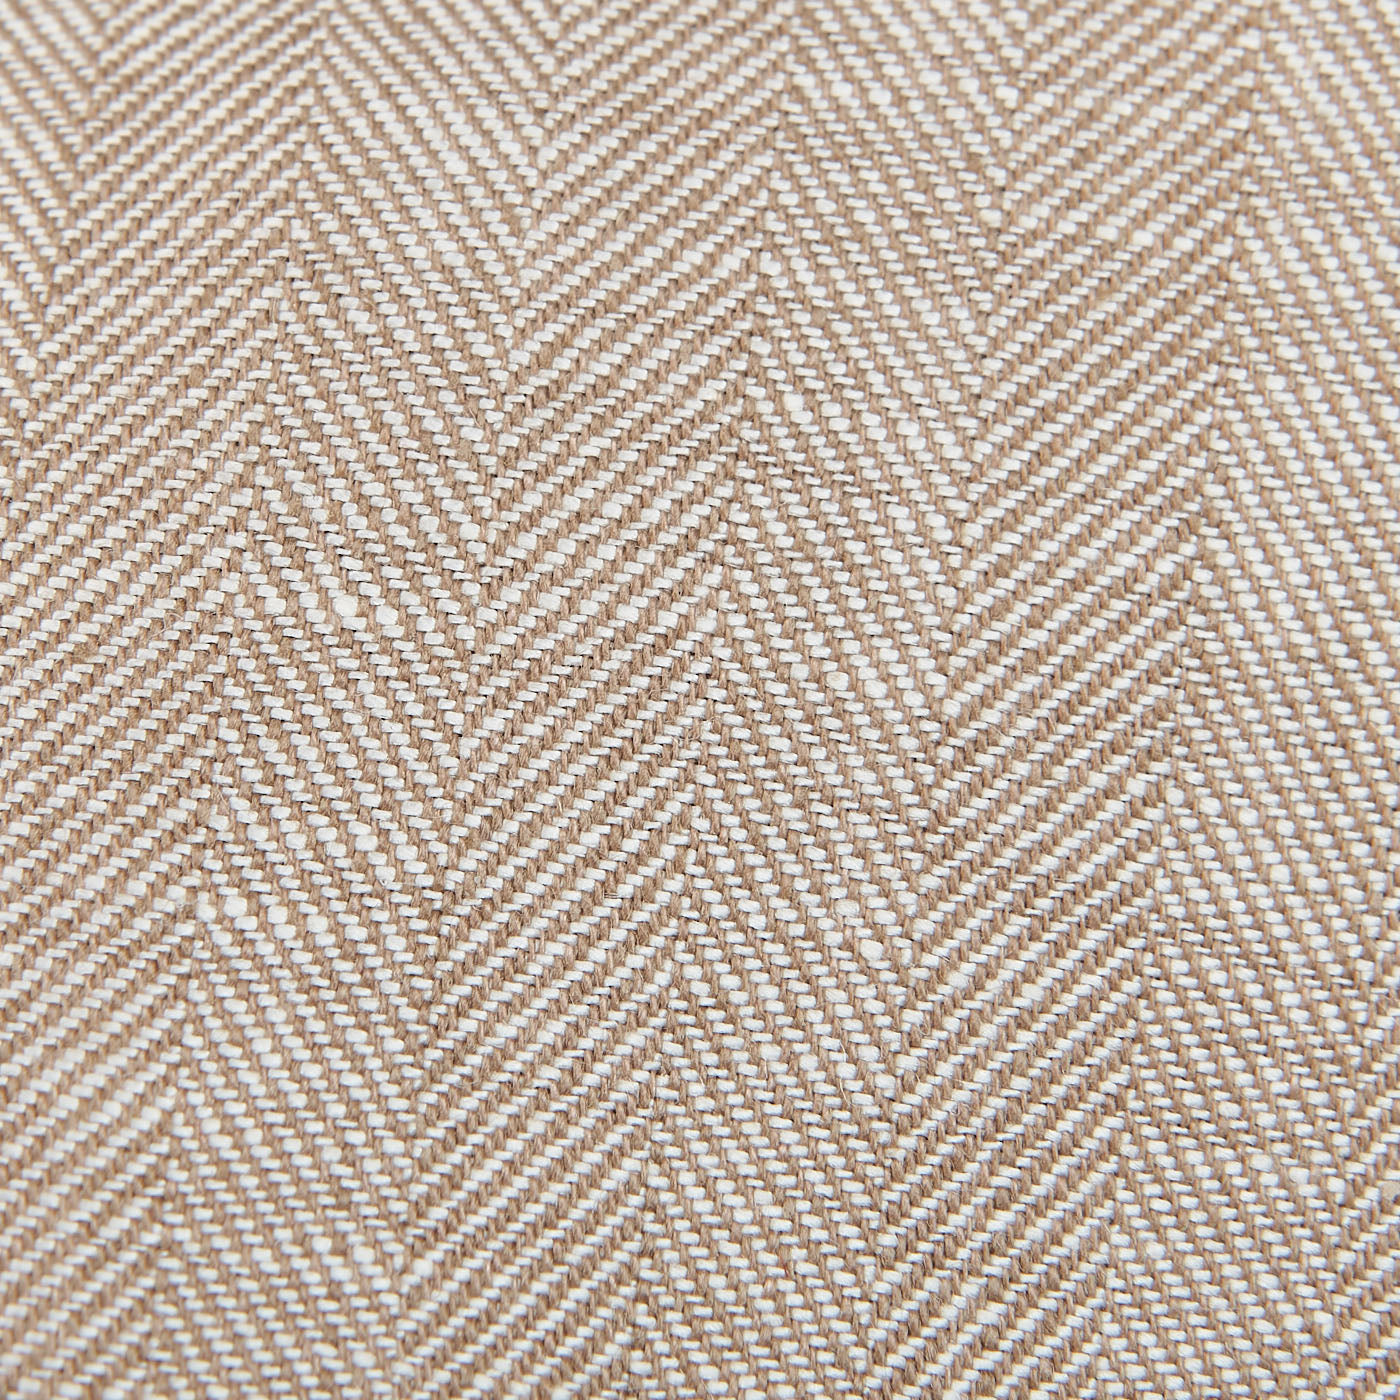 Dreaming of Monday Beige Herringbone 7-Fold Irish Linen Tie Fabric